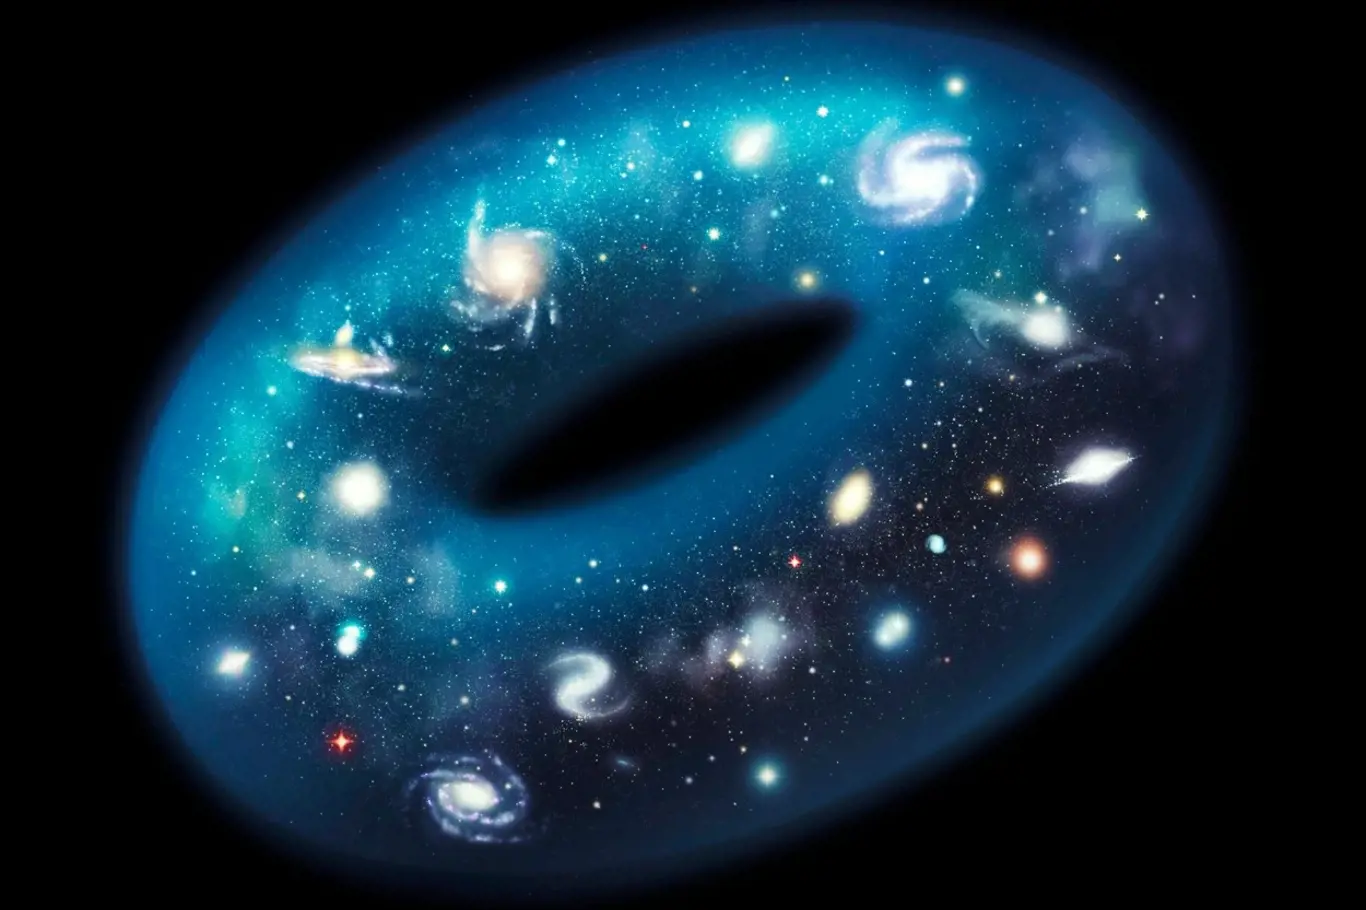 Vesmír má asi tvar plaveckého kruhu